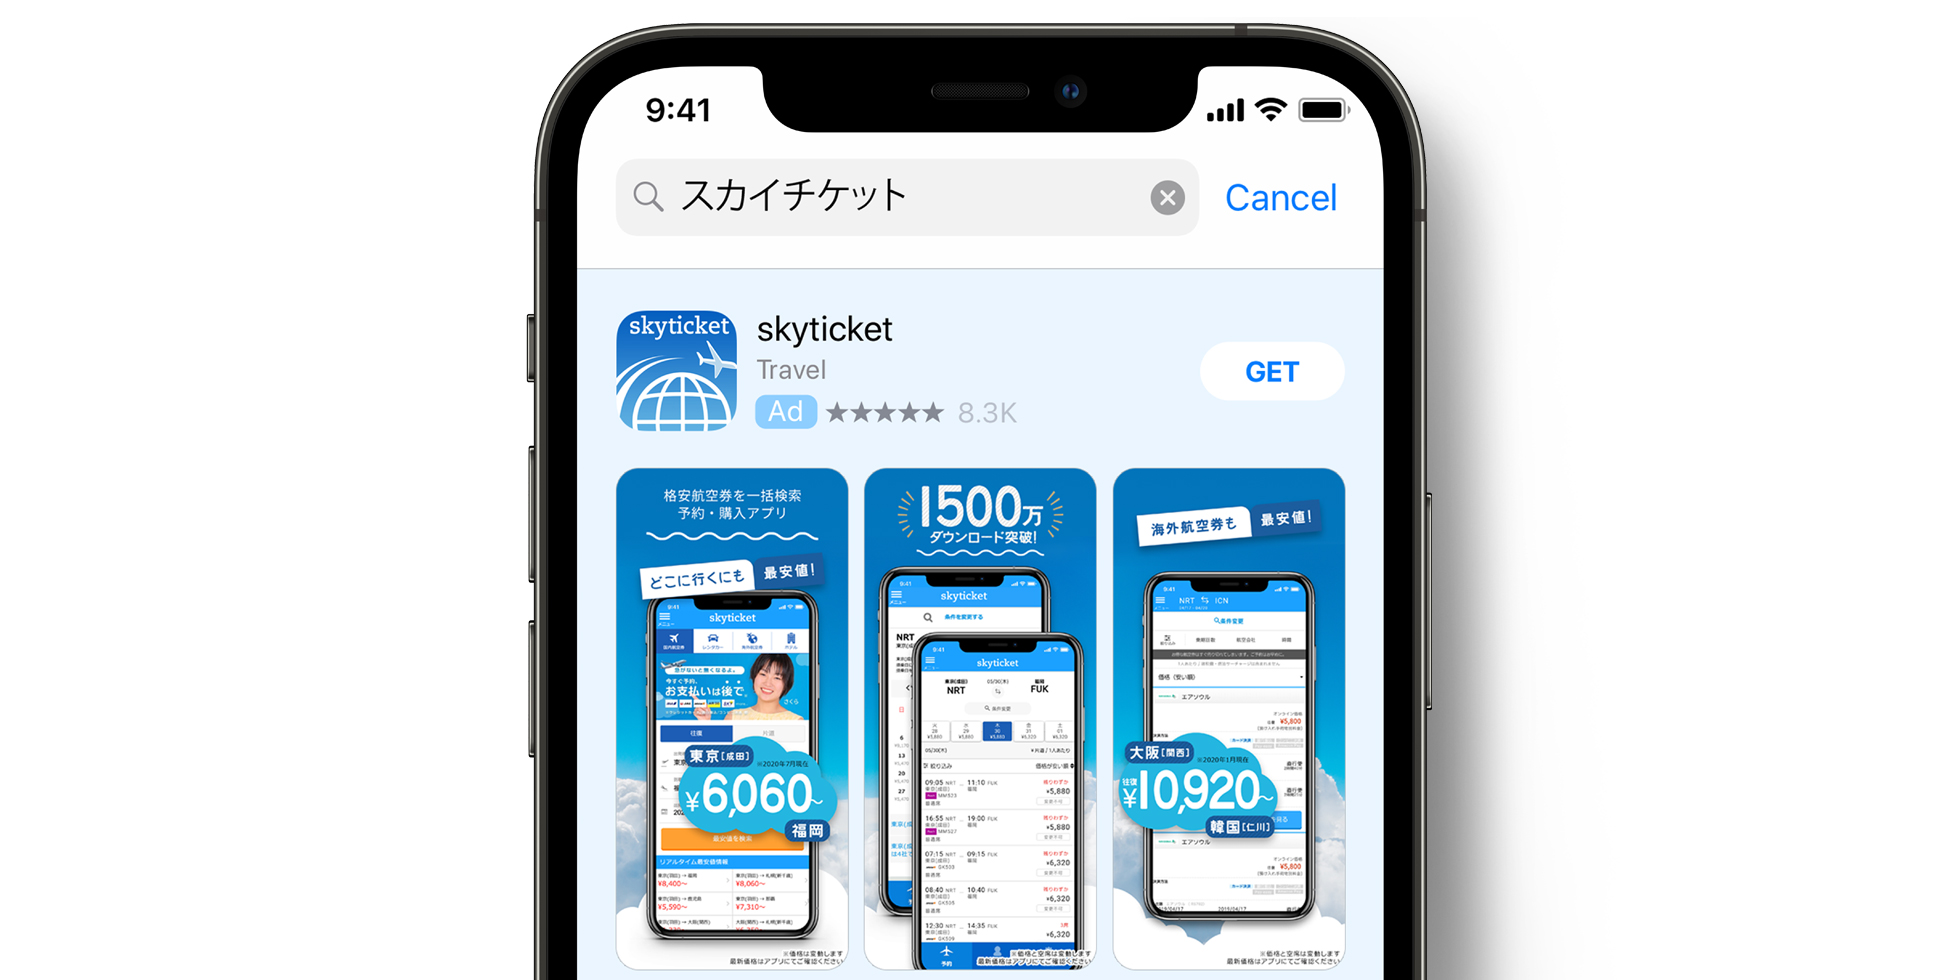 App Store 上的 Skyticket 广告